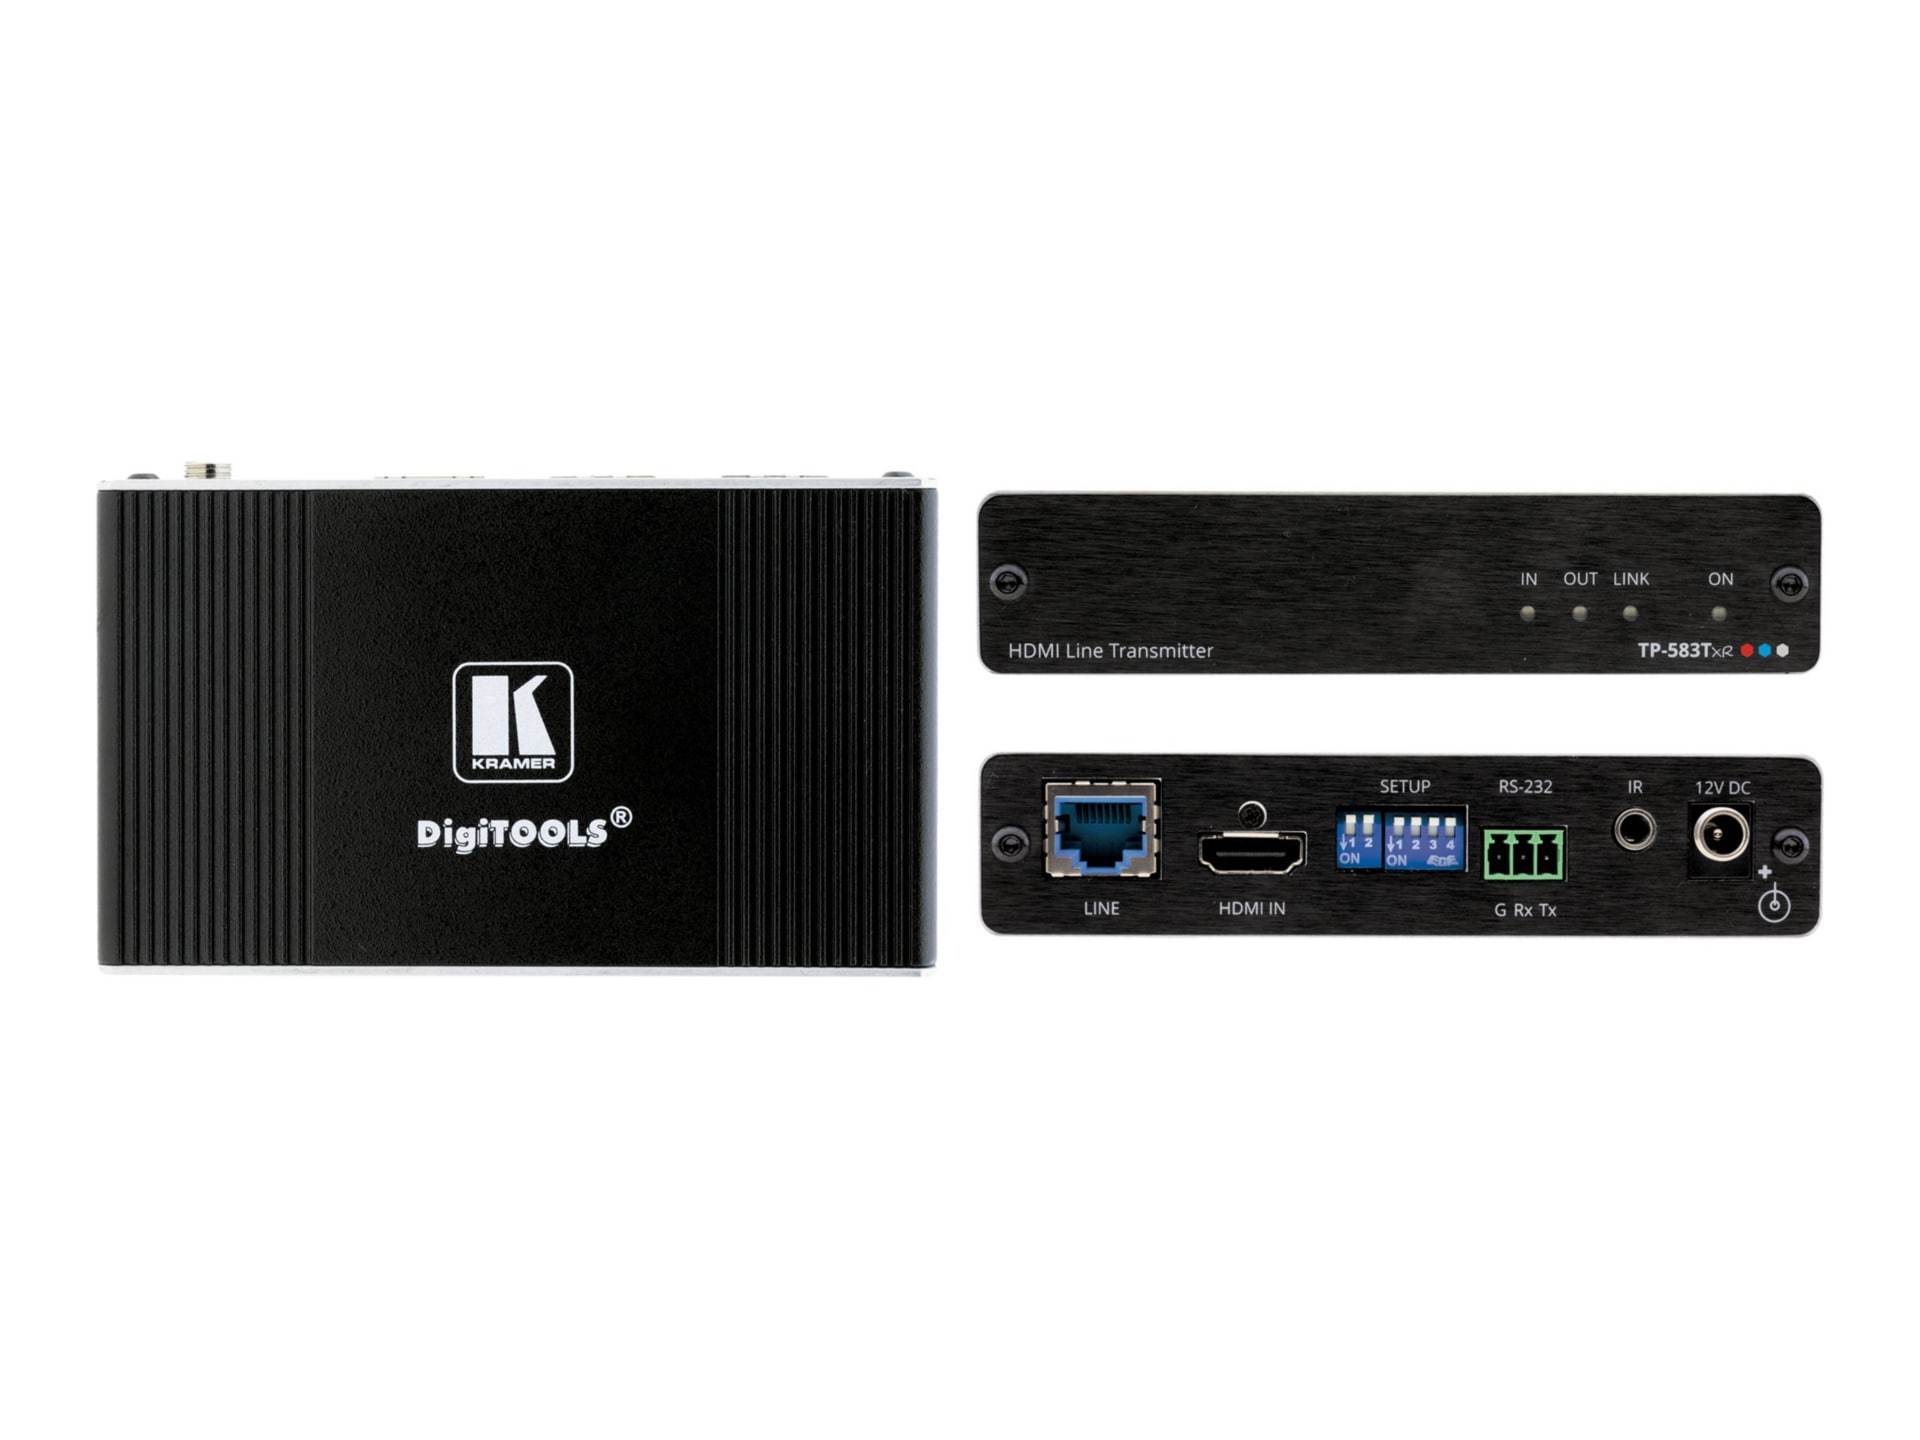 Kramer DigiTOOLS TP-583Txr - video/audio/infrared/serial extender - HDMI, H